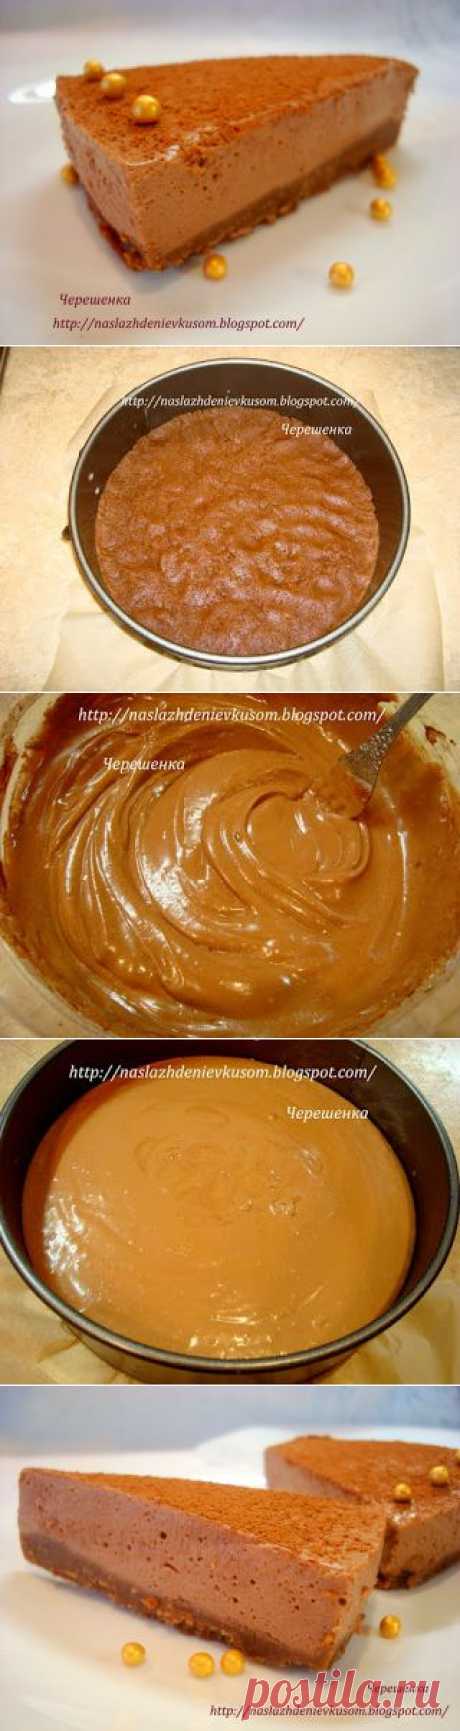 Наслаждение вкусом: Шоколадно-творожный торт-суфле (без выпечки)